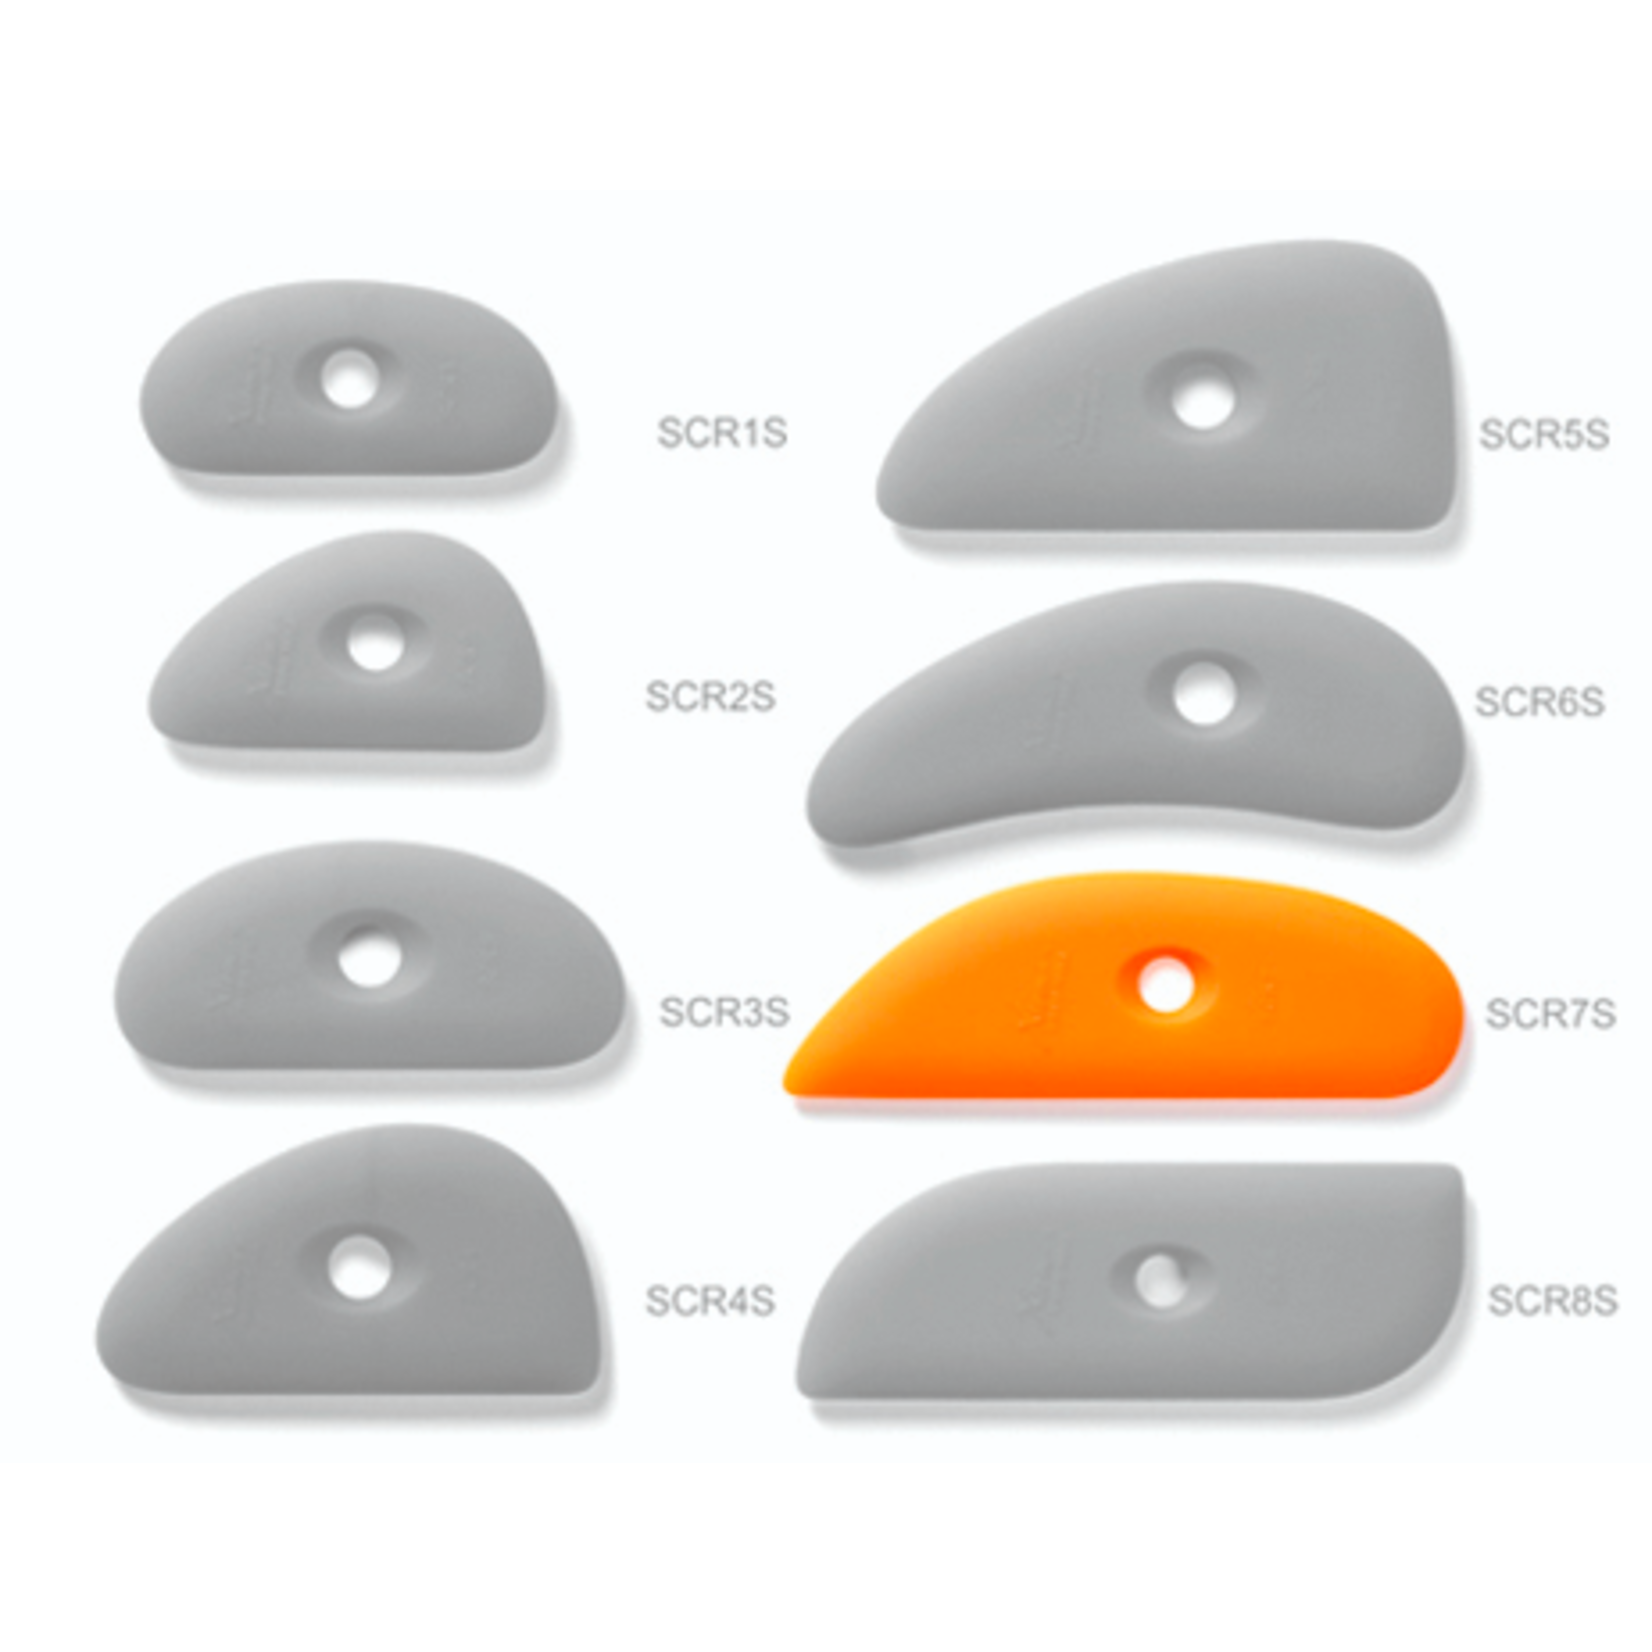 xiem Soft Silicone Rib 7 - Orange